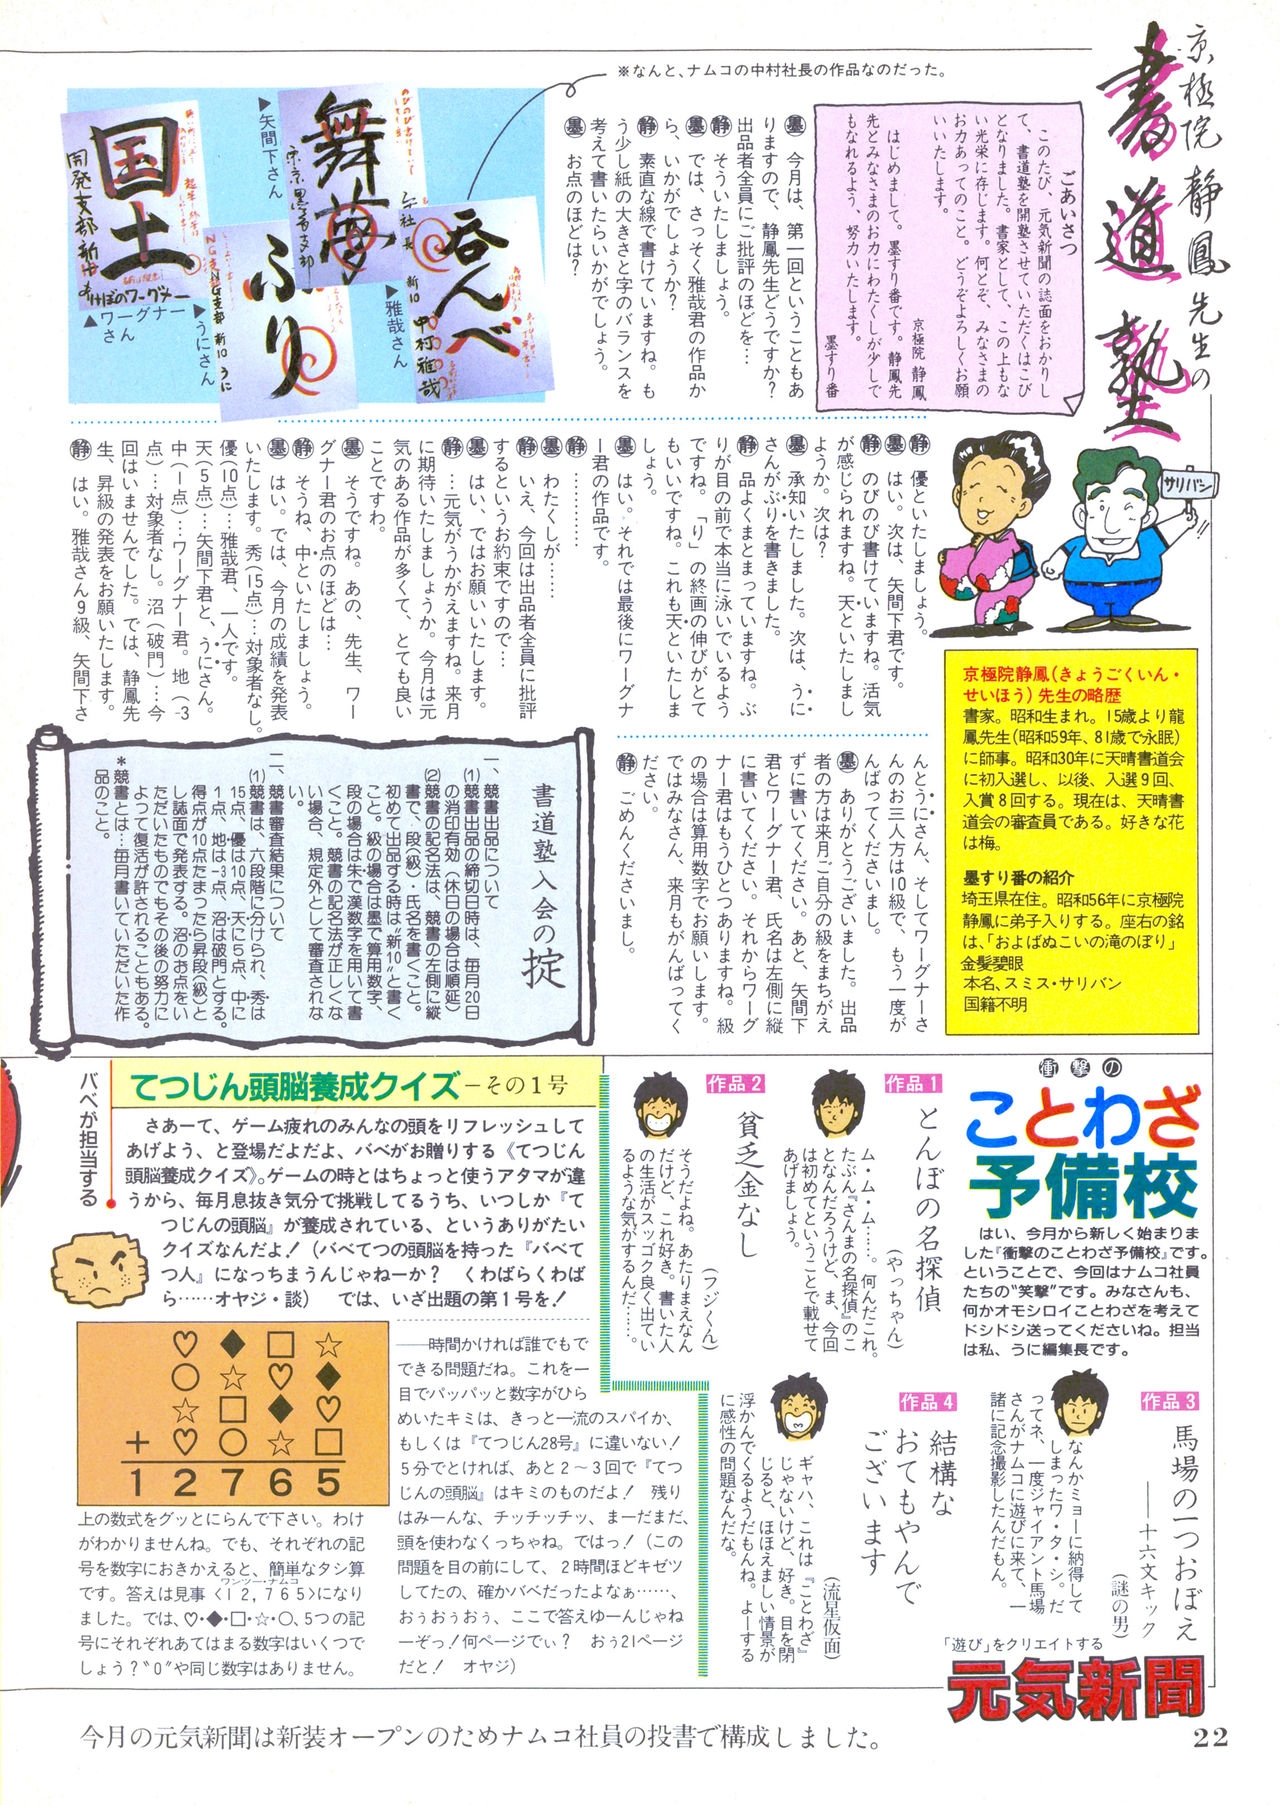 NG Namco Community Magazine 07 21